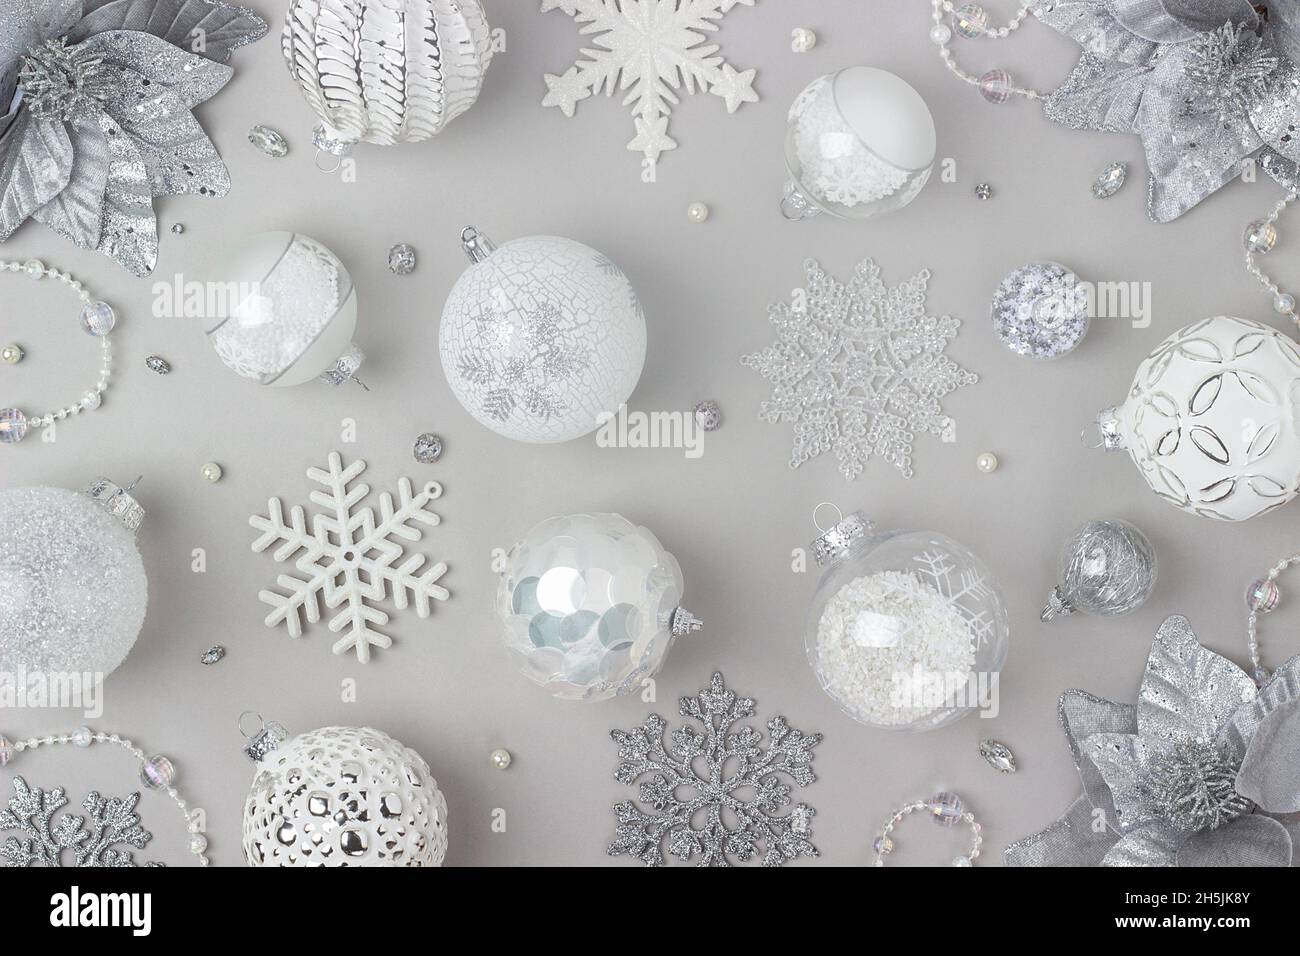 Motif des fêtes fait argent et blanc brillant décorations de noël sur fond gris.Concept joyeux Noël, Noël et nouvel an.Vue de dessus, Flat lay. Banque D'Images